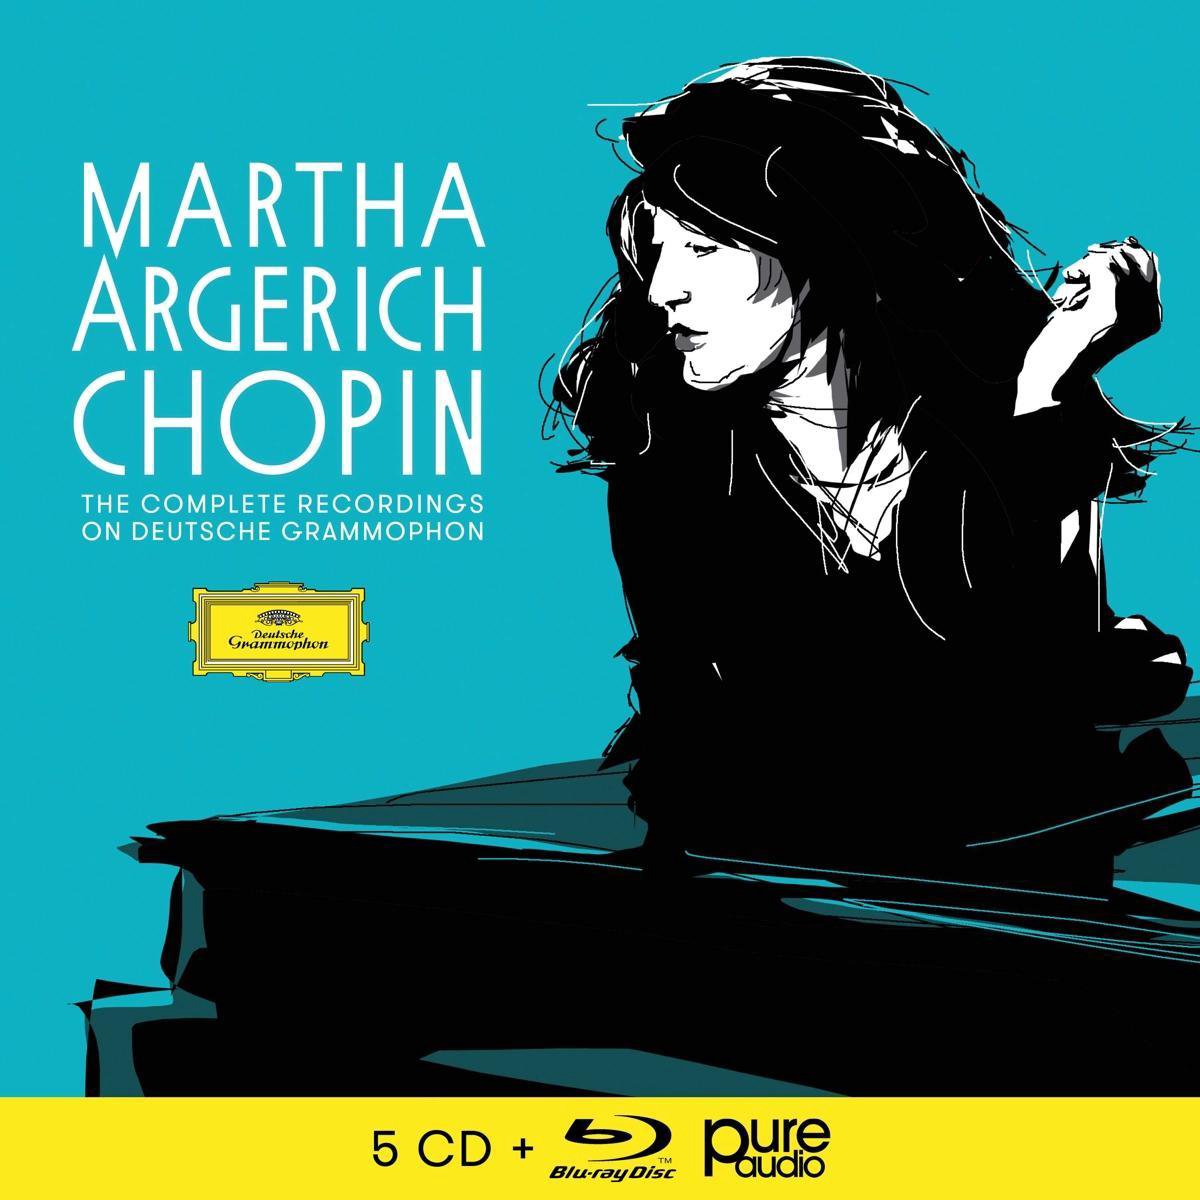 Audio Cd Martha Argerich: Chopin - The Complete Recordings On Deutsche Grammophon (5 Cd+Blu-Ray Audio) NUOVO SIGILLATO, EDIZIONE DEL 07/05/2021 SUBITO DISPONIBILE